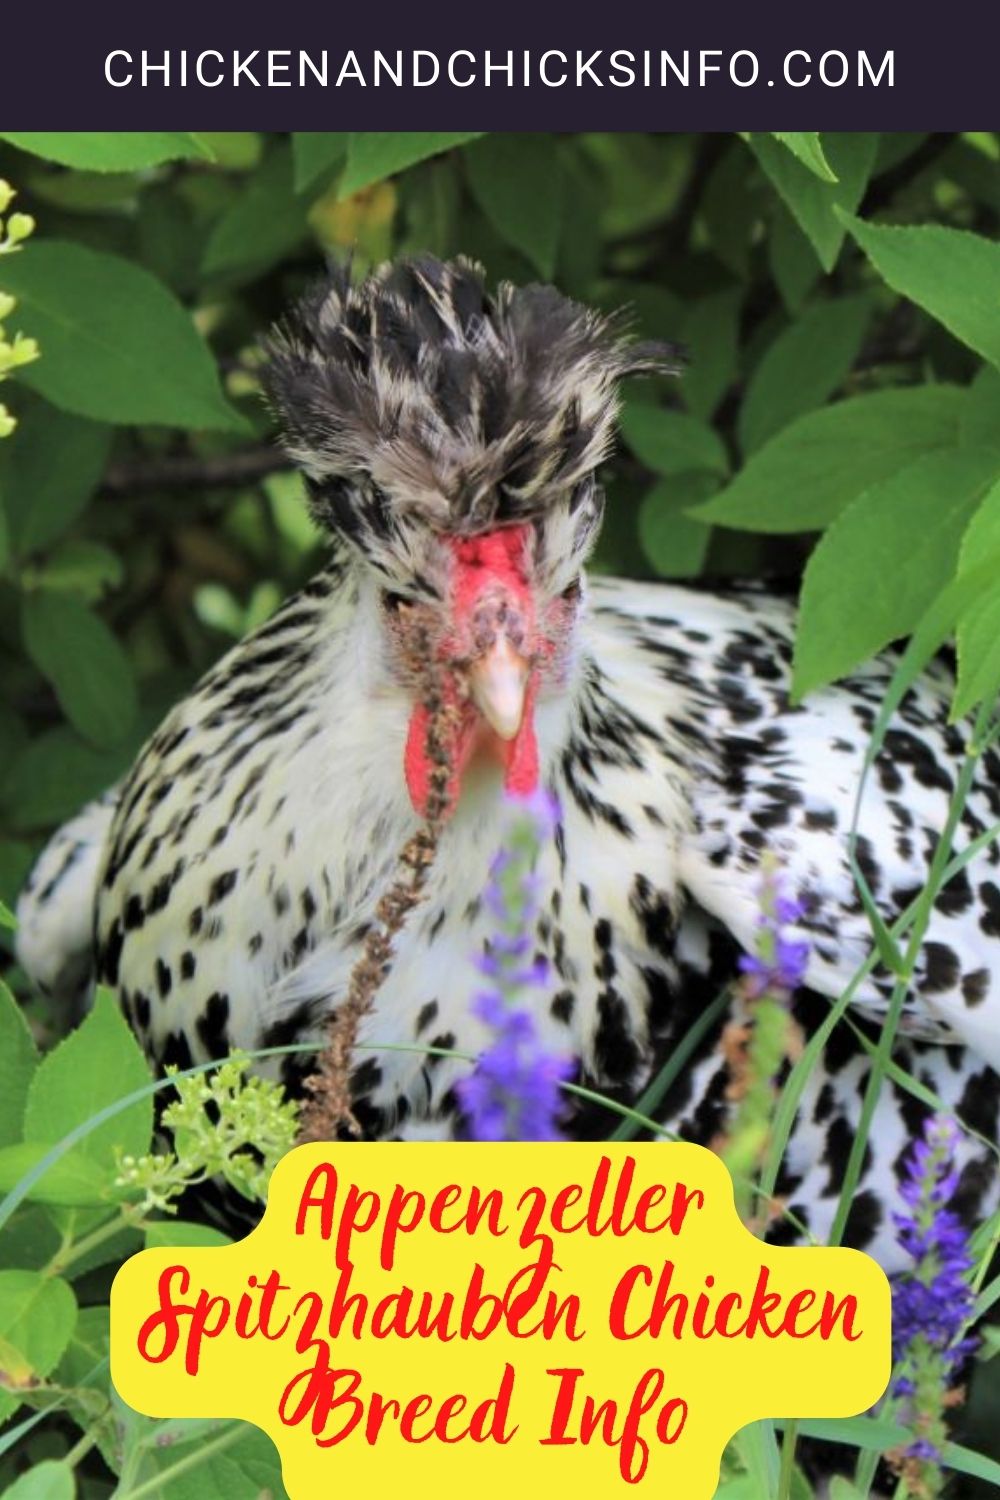 Appenzeller Spitzhauben Chicken Breed Info pinerest image.